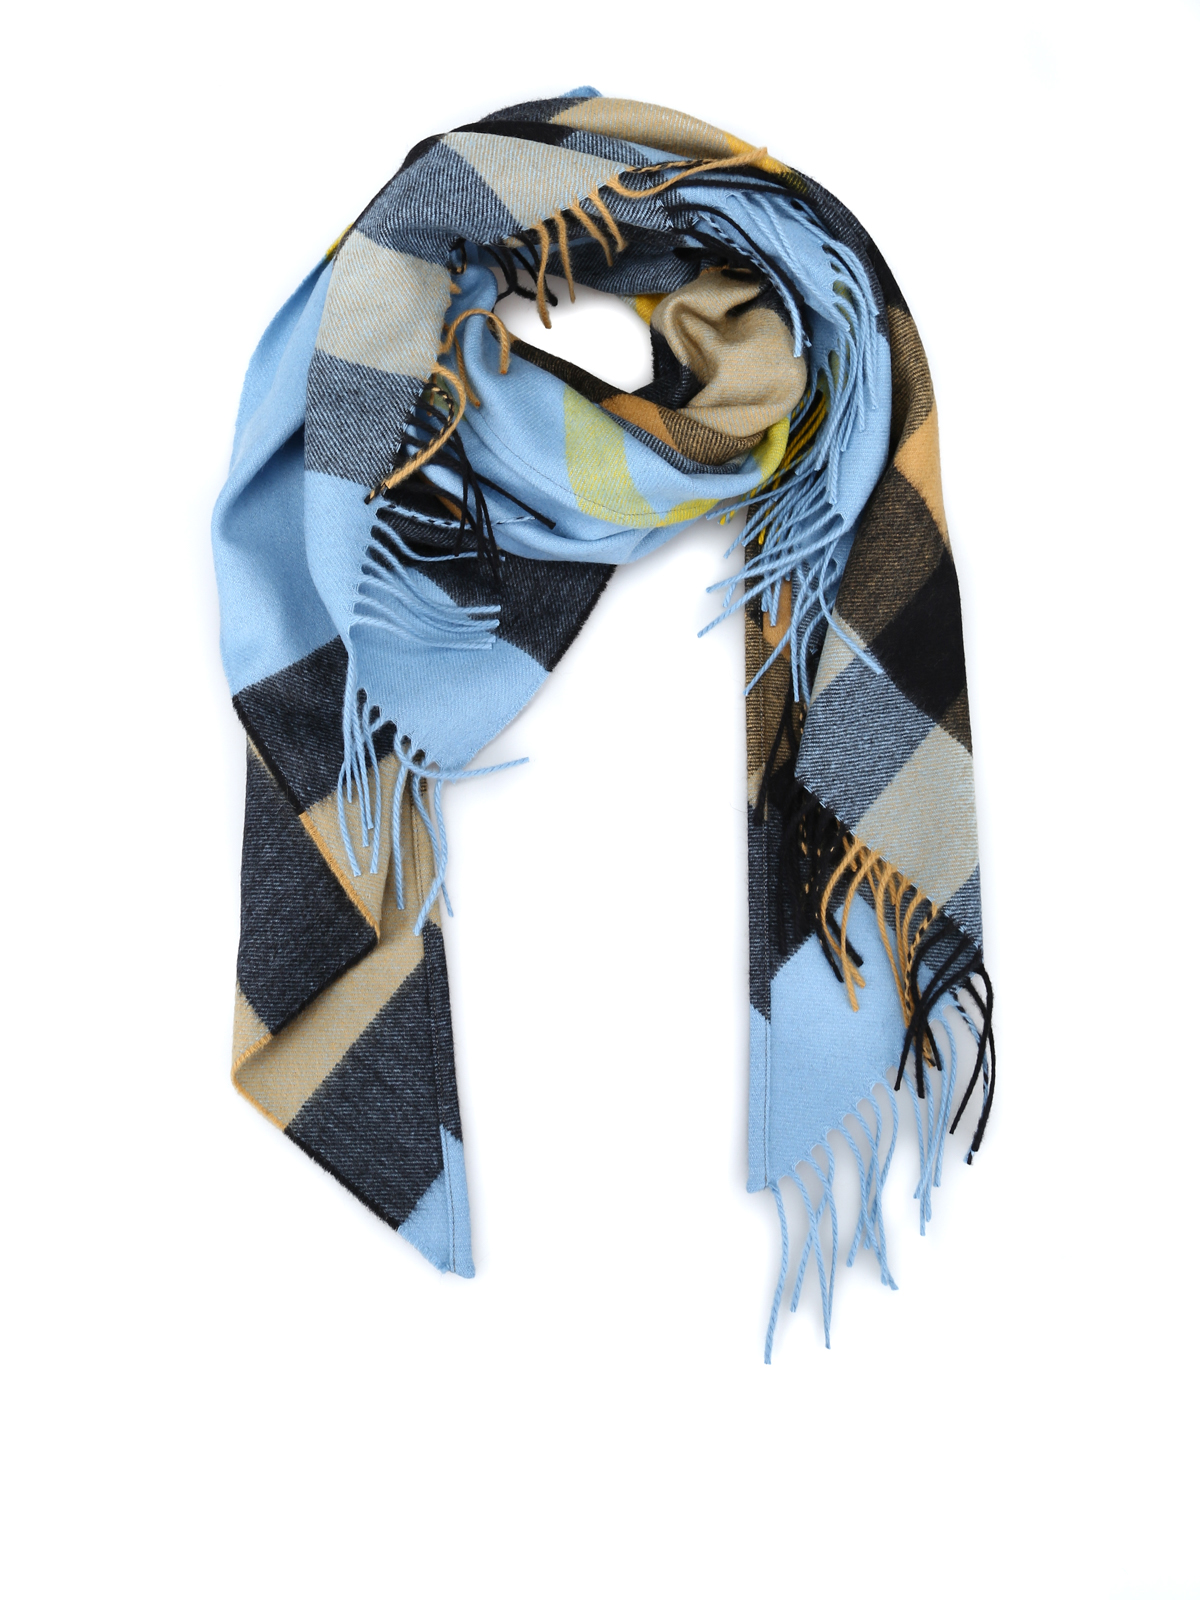 burberry scarf mens 2013